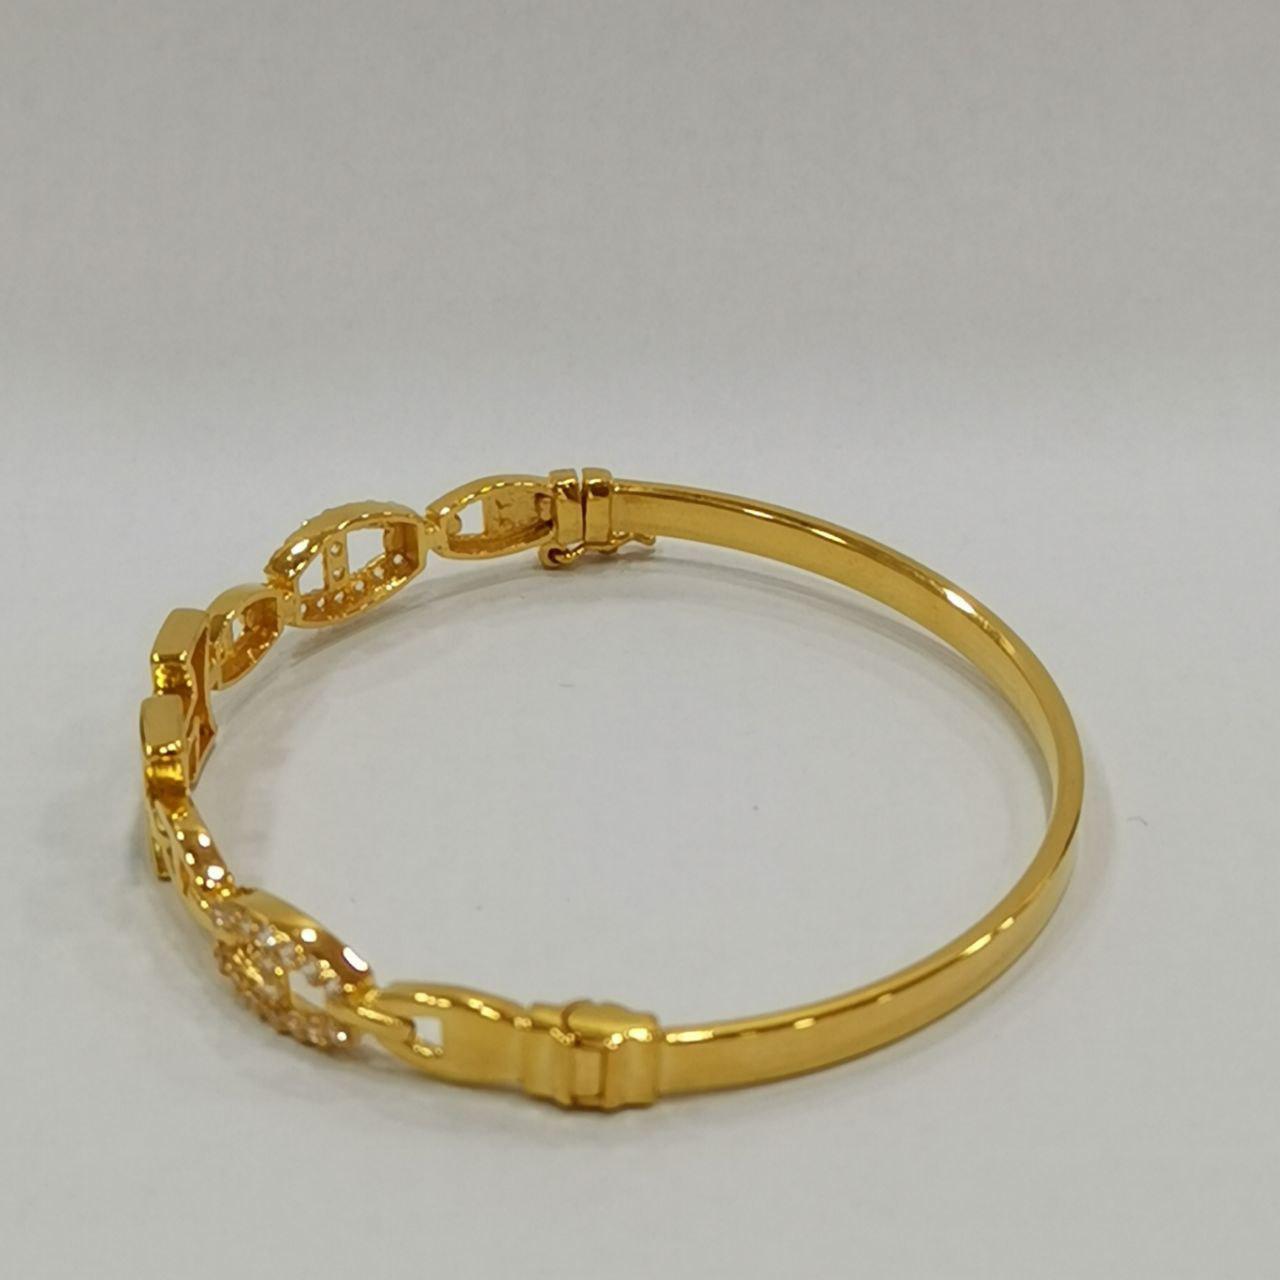 22k / 916 Gold H Design Bangle-916 gold-Best Gold Shop